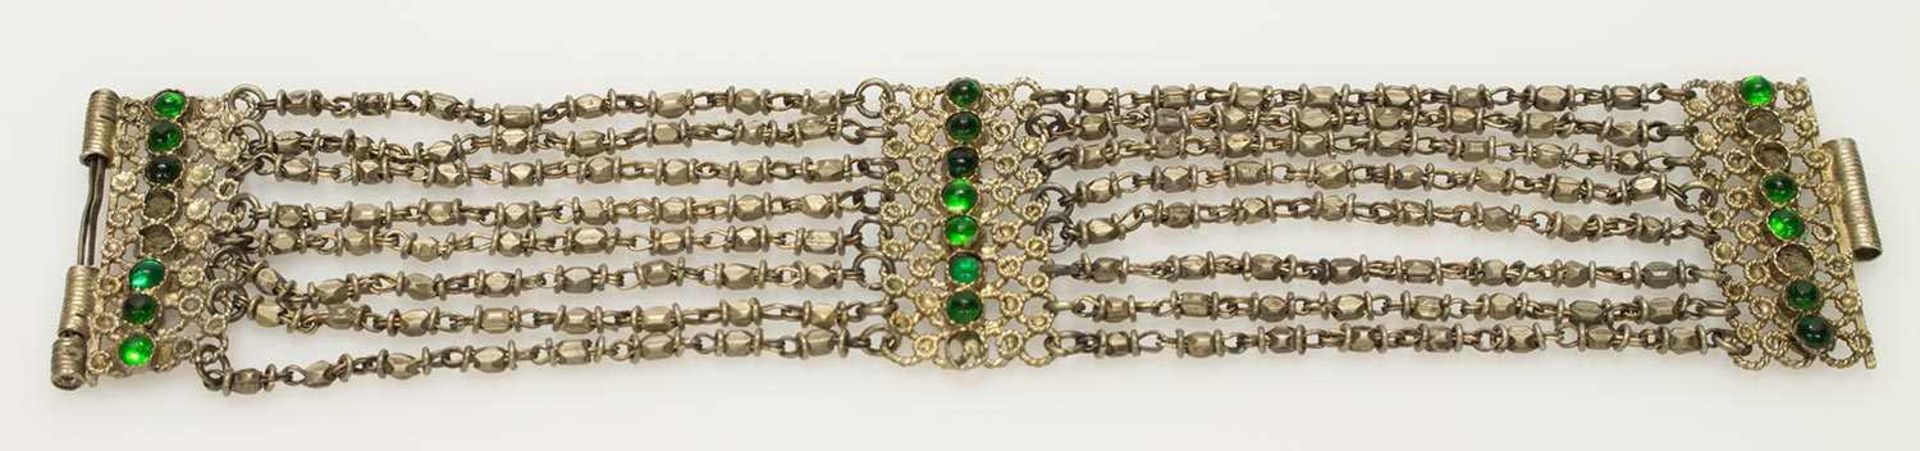 ArmbandIndien, achtreihig angeordnete Perlen, 3 Zwischenstücke teilw. mit grünen Steinen besetzt,